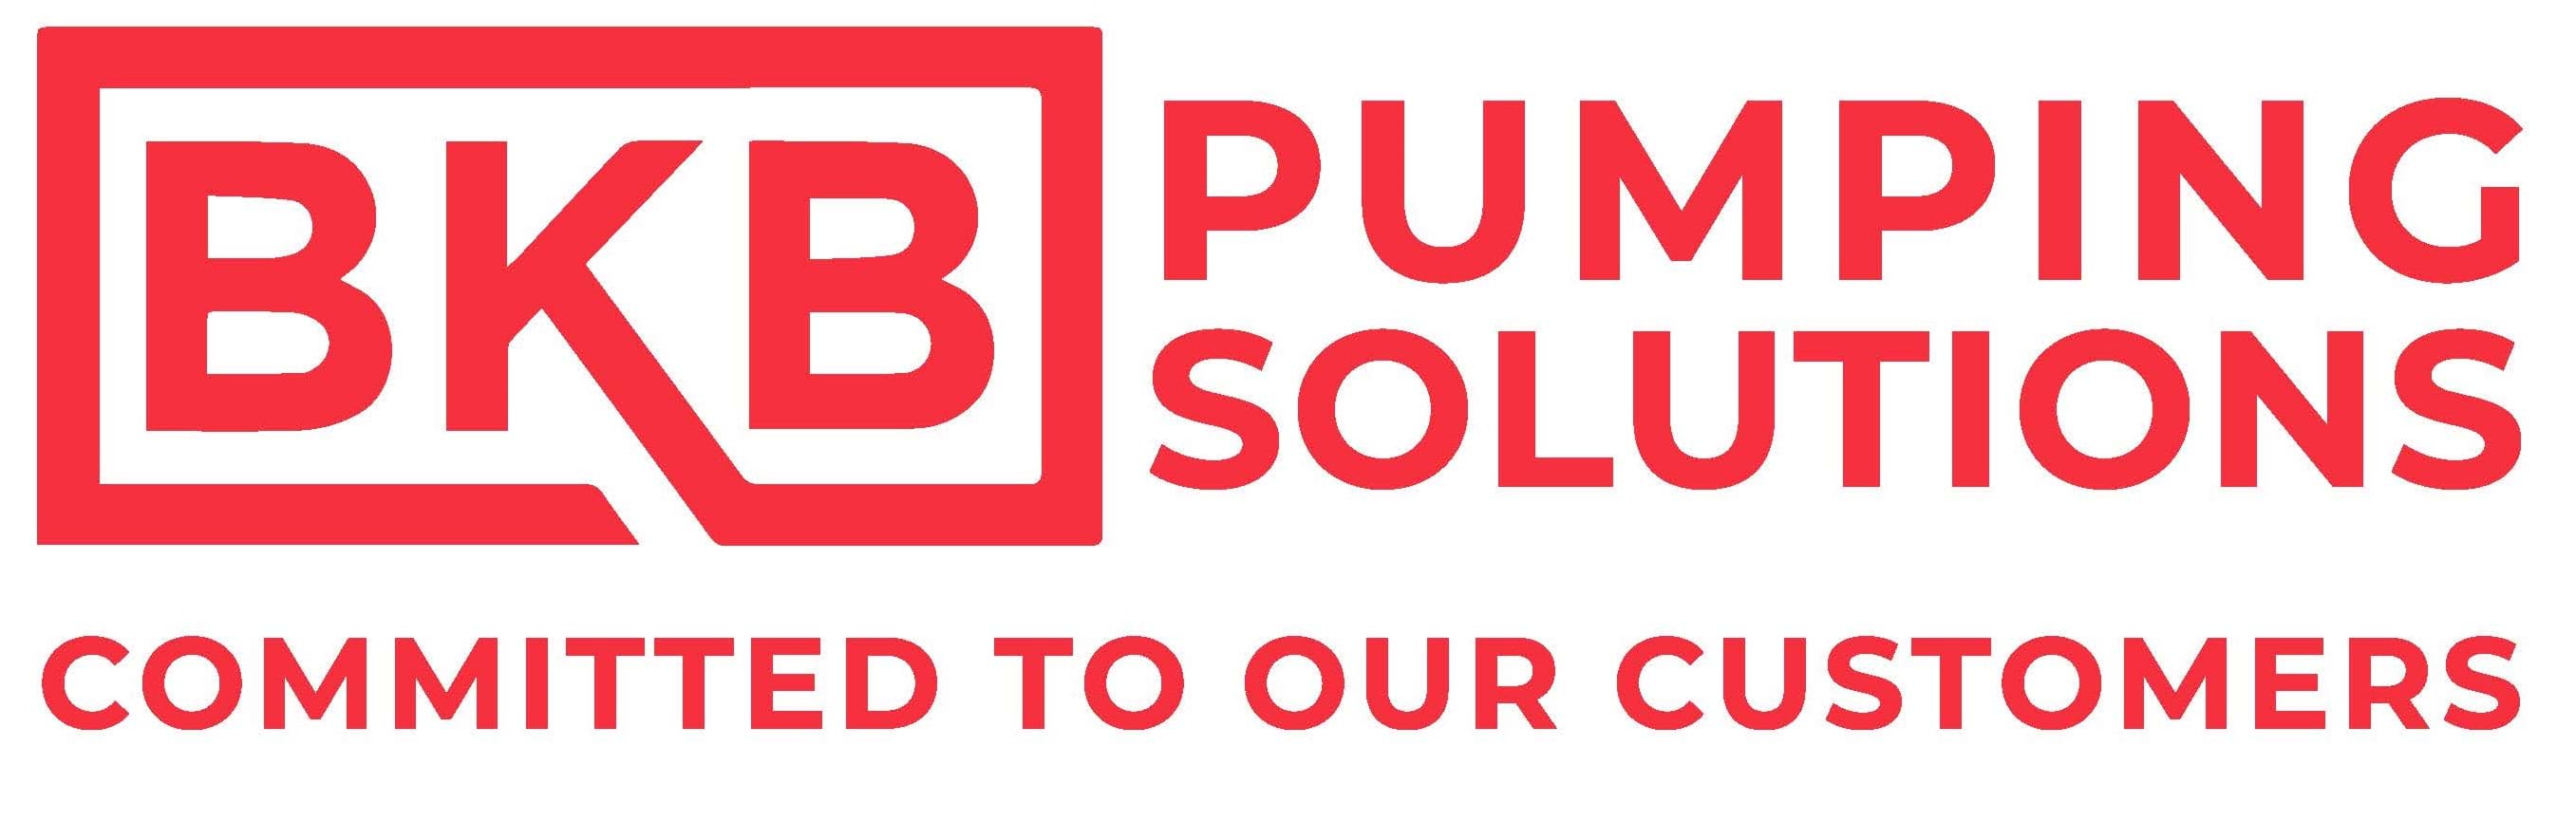 BKB Pumping Solutions logo